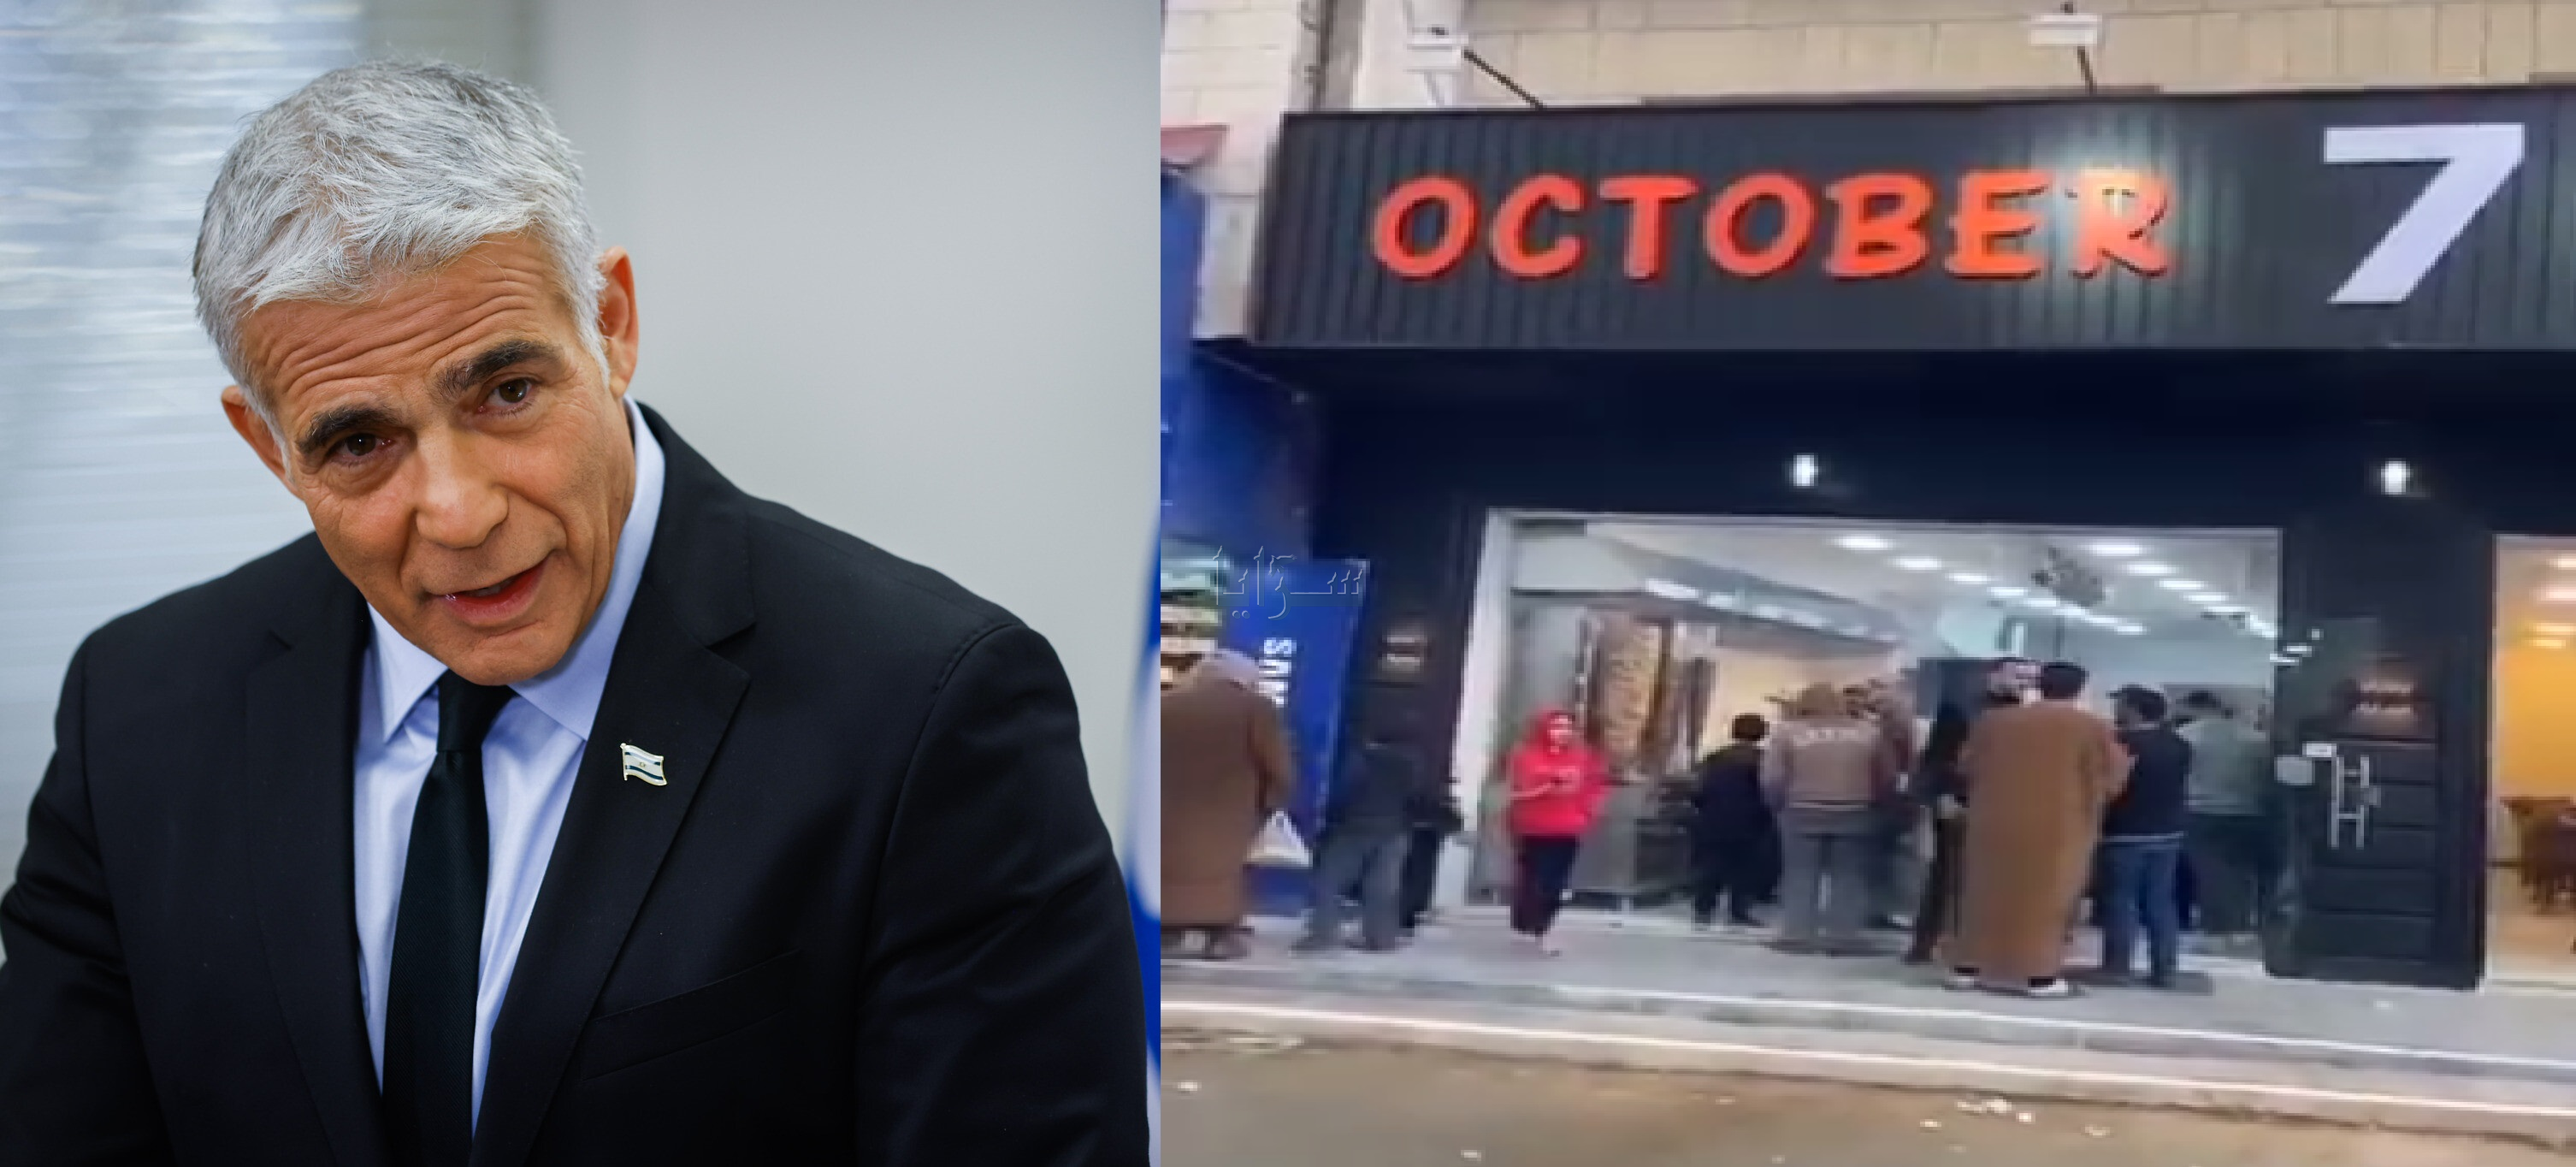 لابيد يدين افتتاح مطعم في الأردن يحمل اسم "7 أكتوبر" - فيديو 